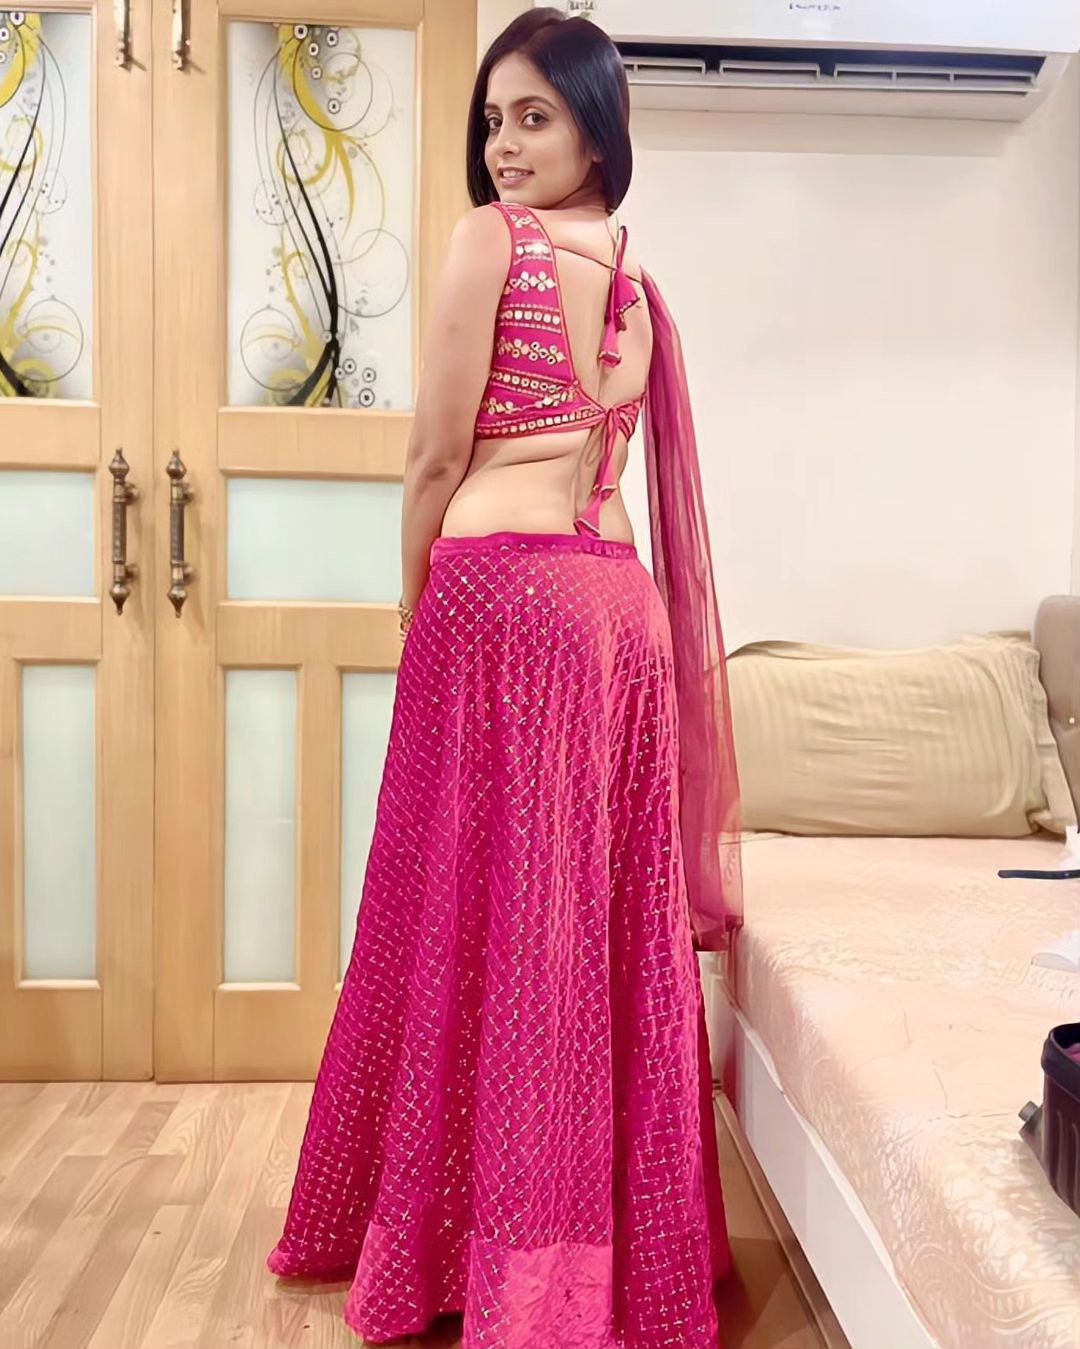 Pragya Nayan Back Pose in Pink Dress